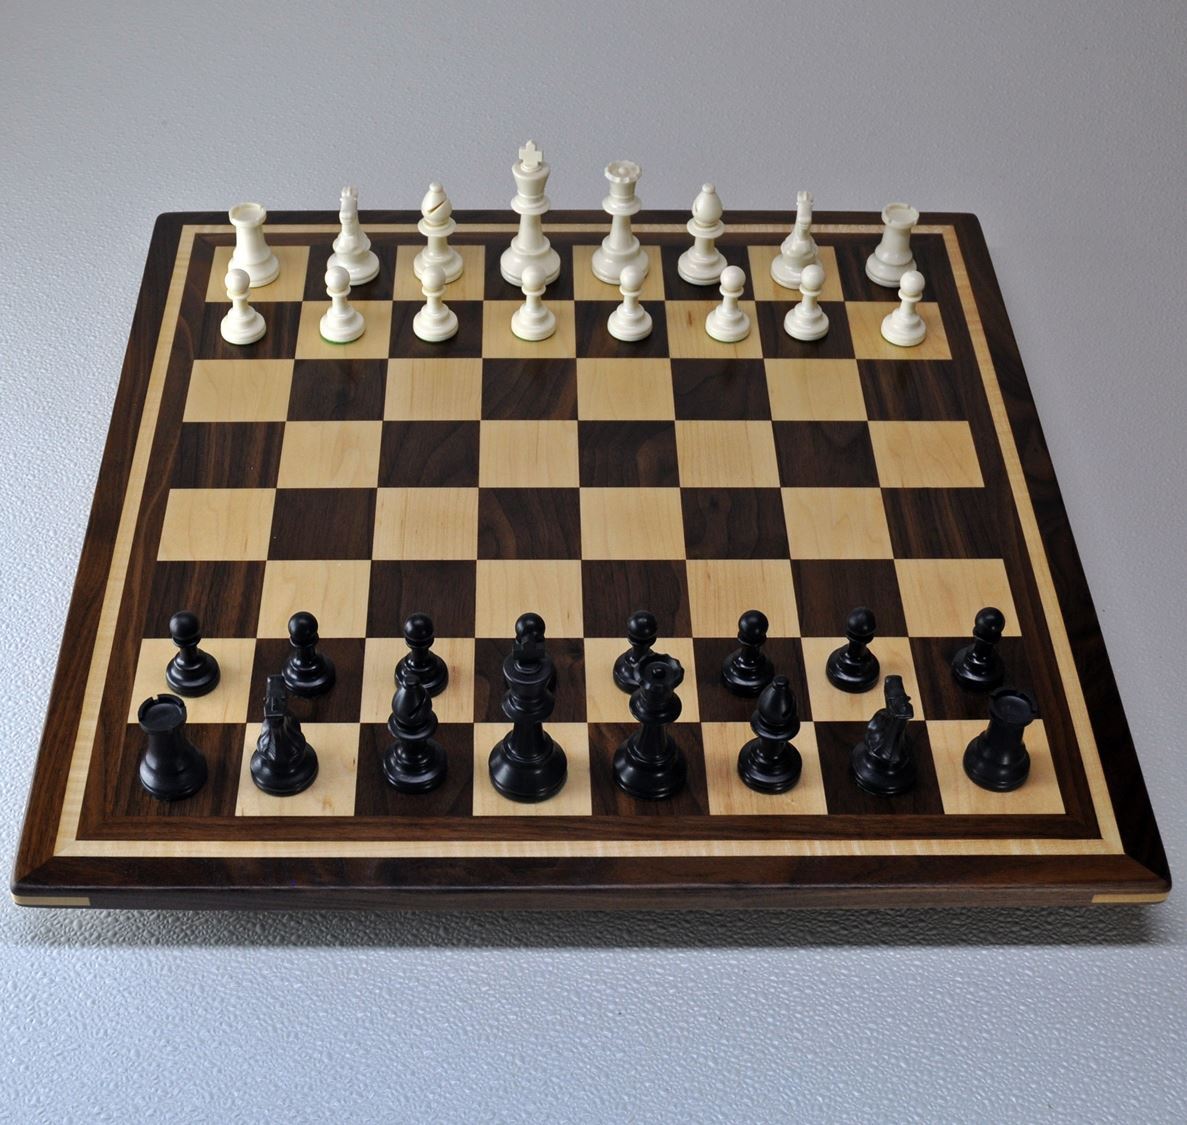 Chess board (2 part - box and lid) by mattsimus